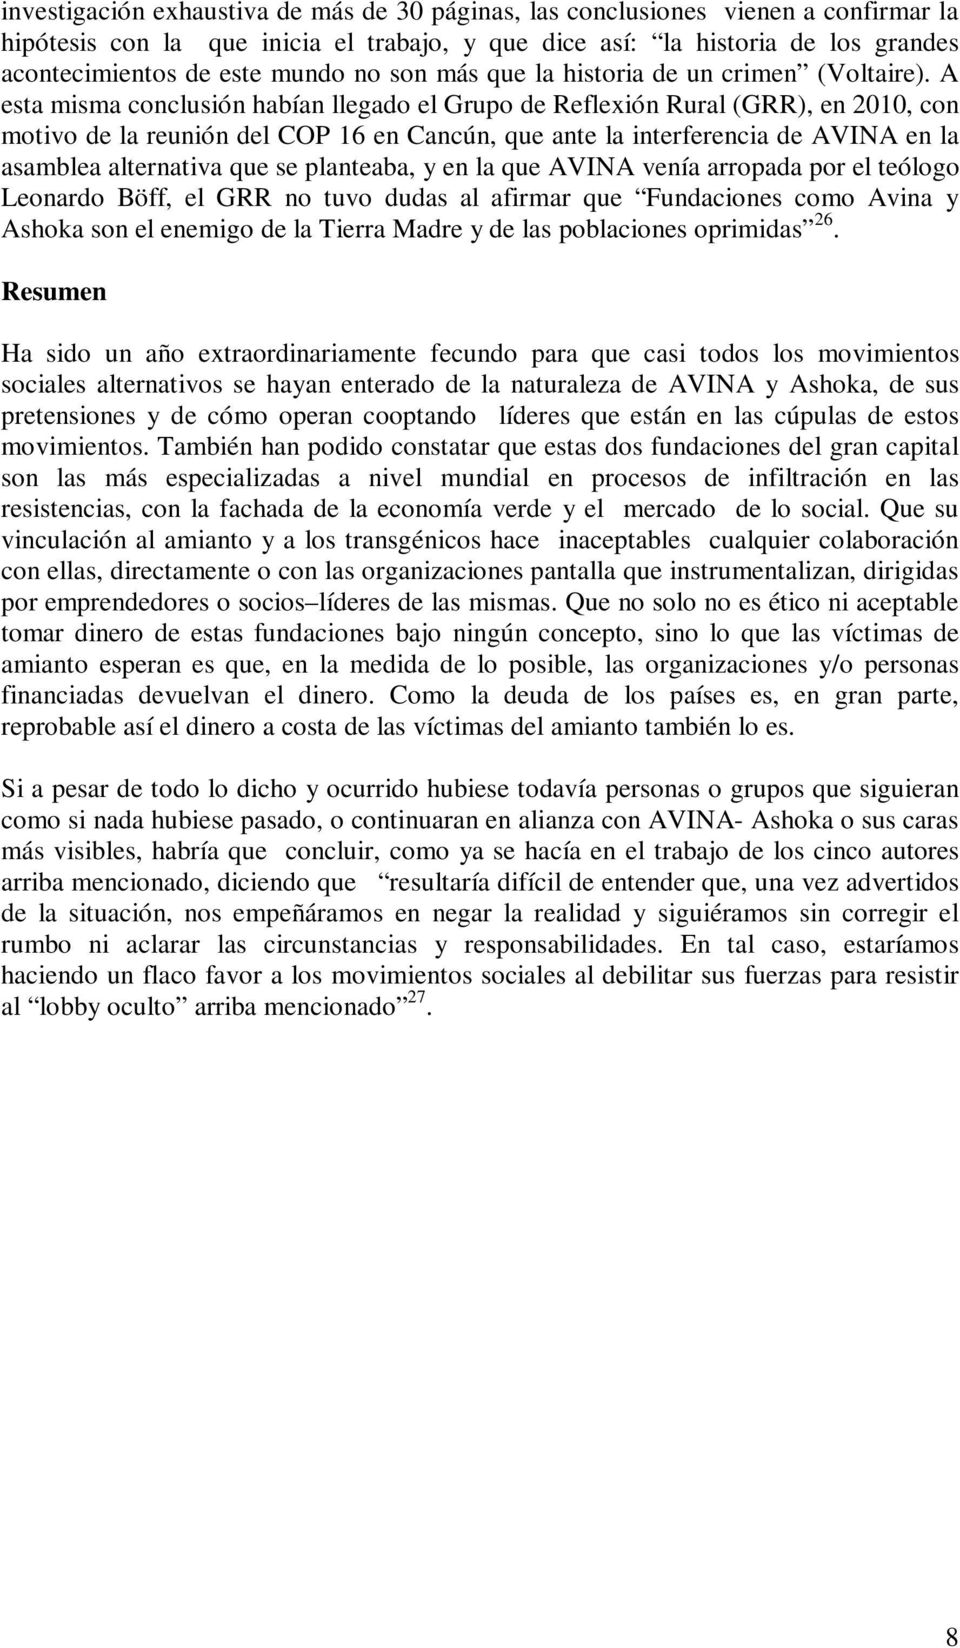 A esta misma conclusión habían llegado el Grupo de Reflexión Rural (GRR), en 2010, con motivo de la reunión del COP 16 en Cancún, que ante la interferencia de AVINA en la asamblea alternativa que se